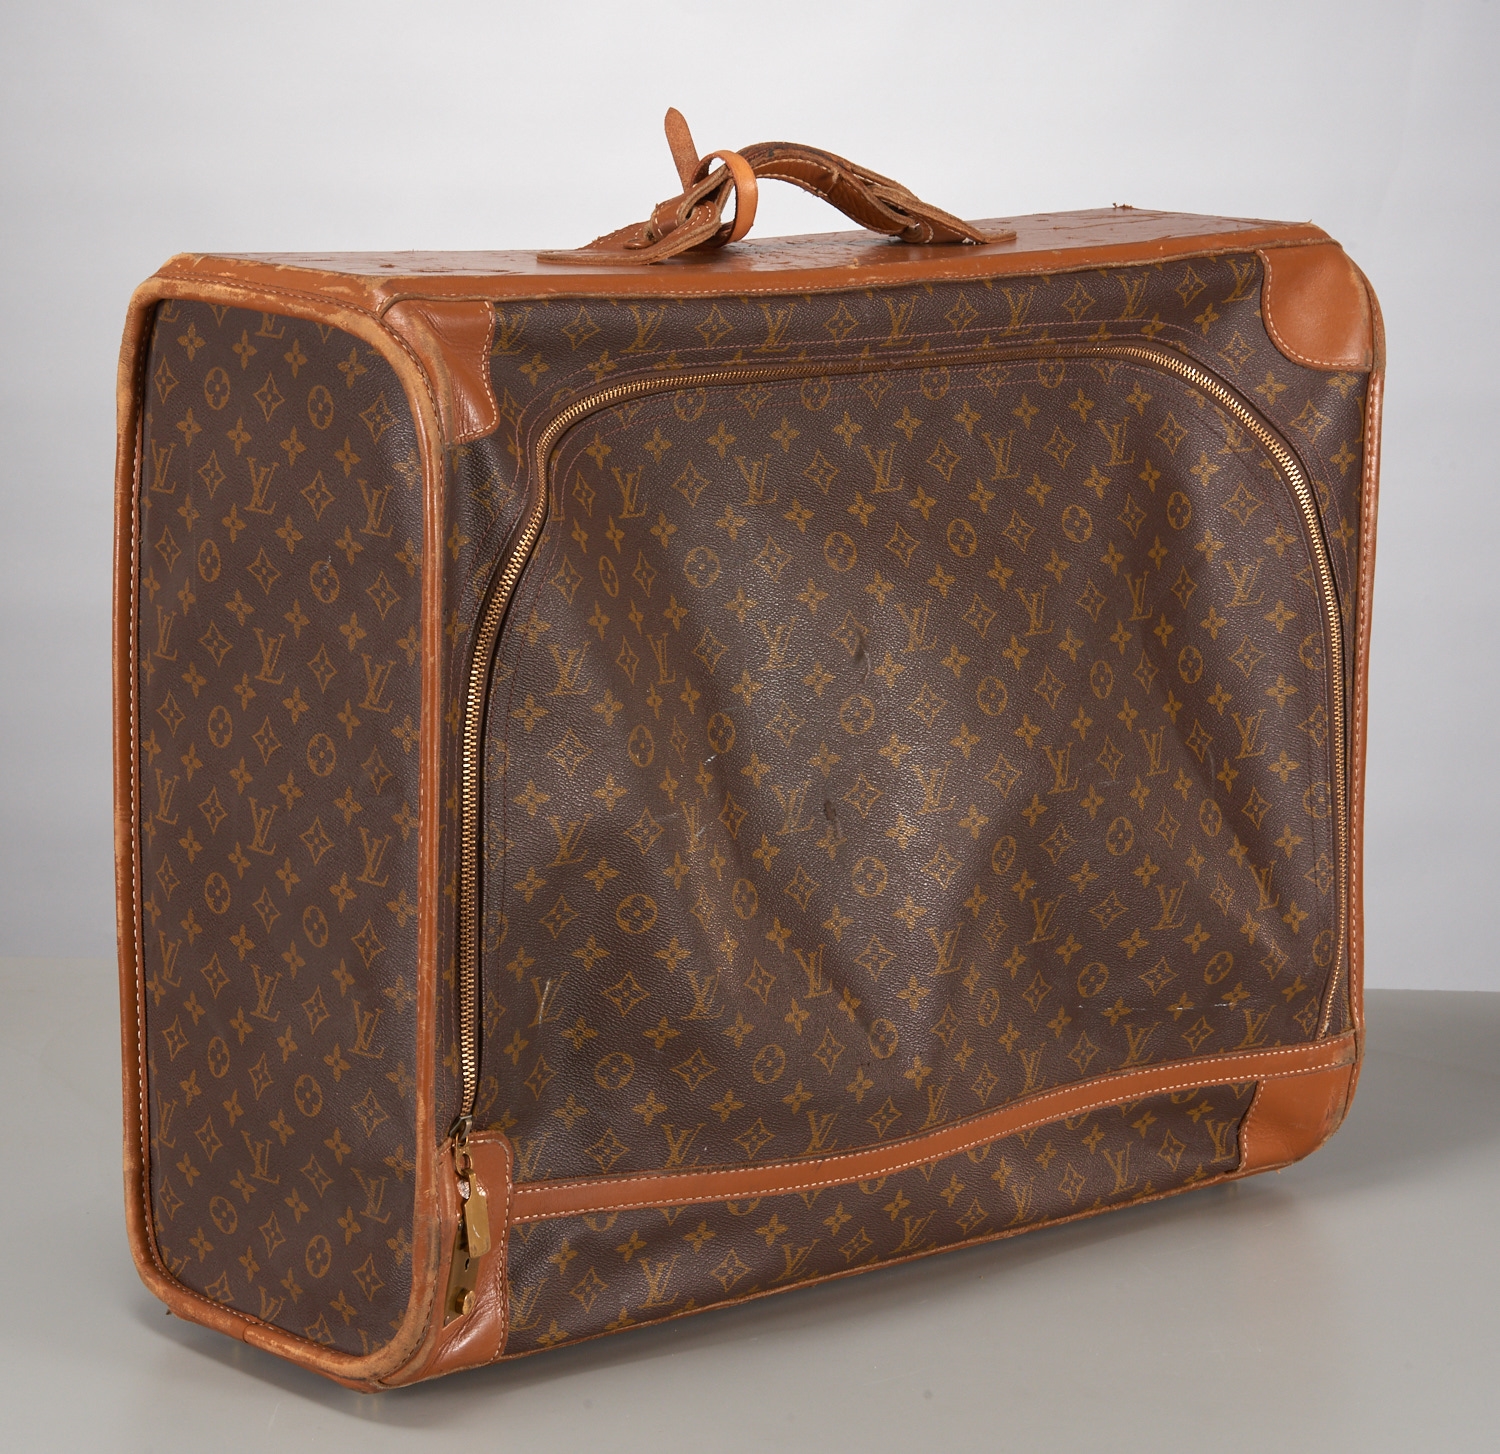 Lot - FOUR PIECES OF LOUIS VUITTON LUGGAGE Suitcase, garment bag